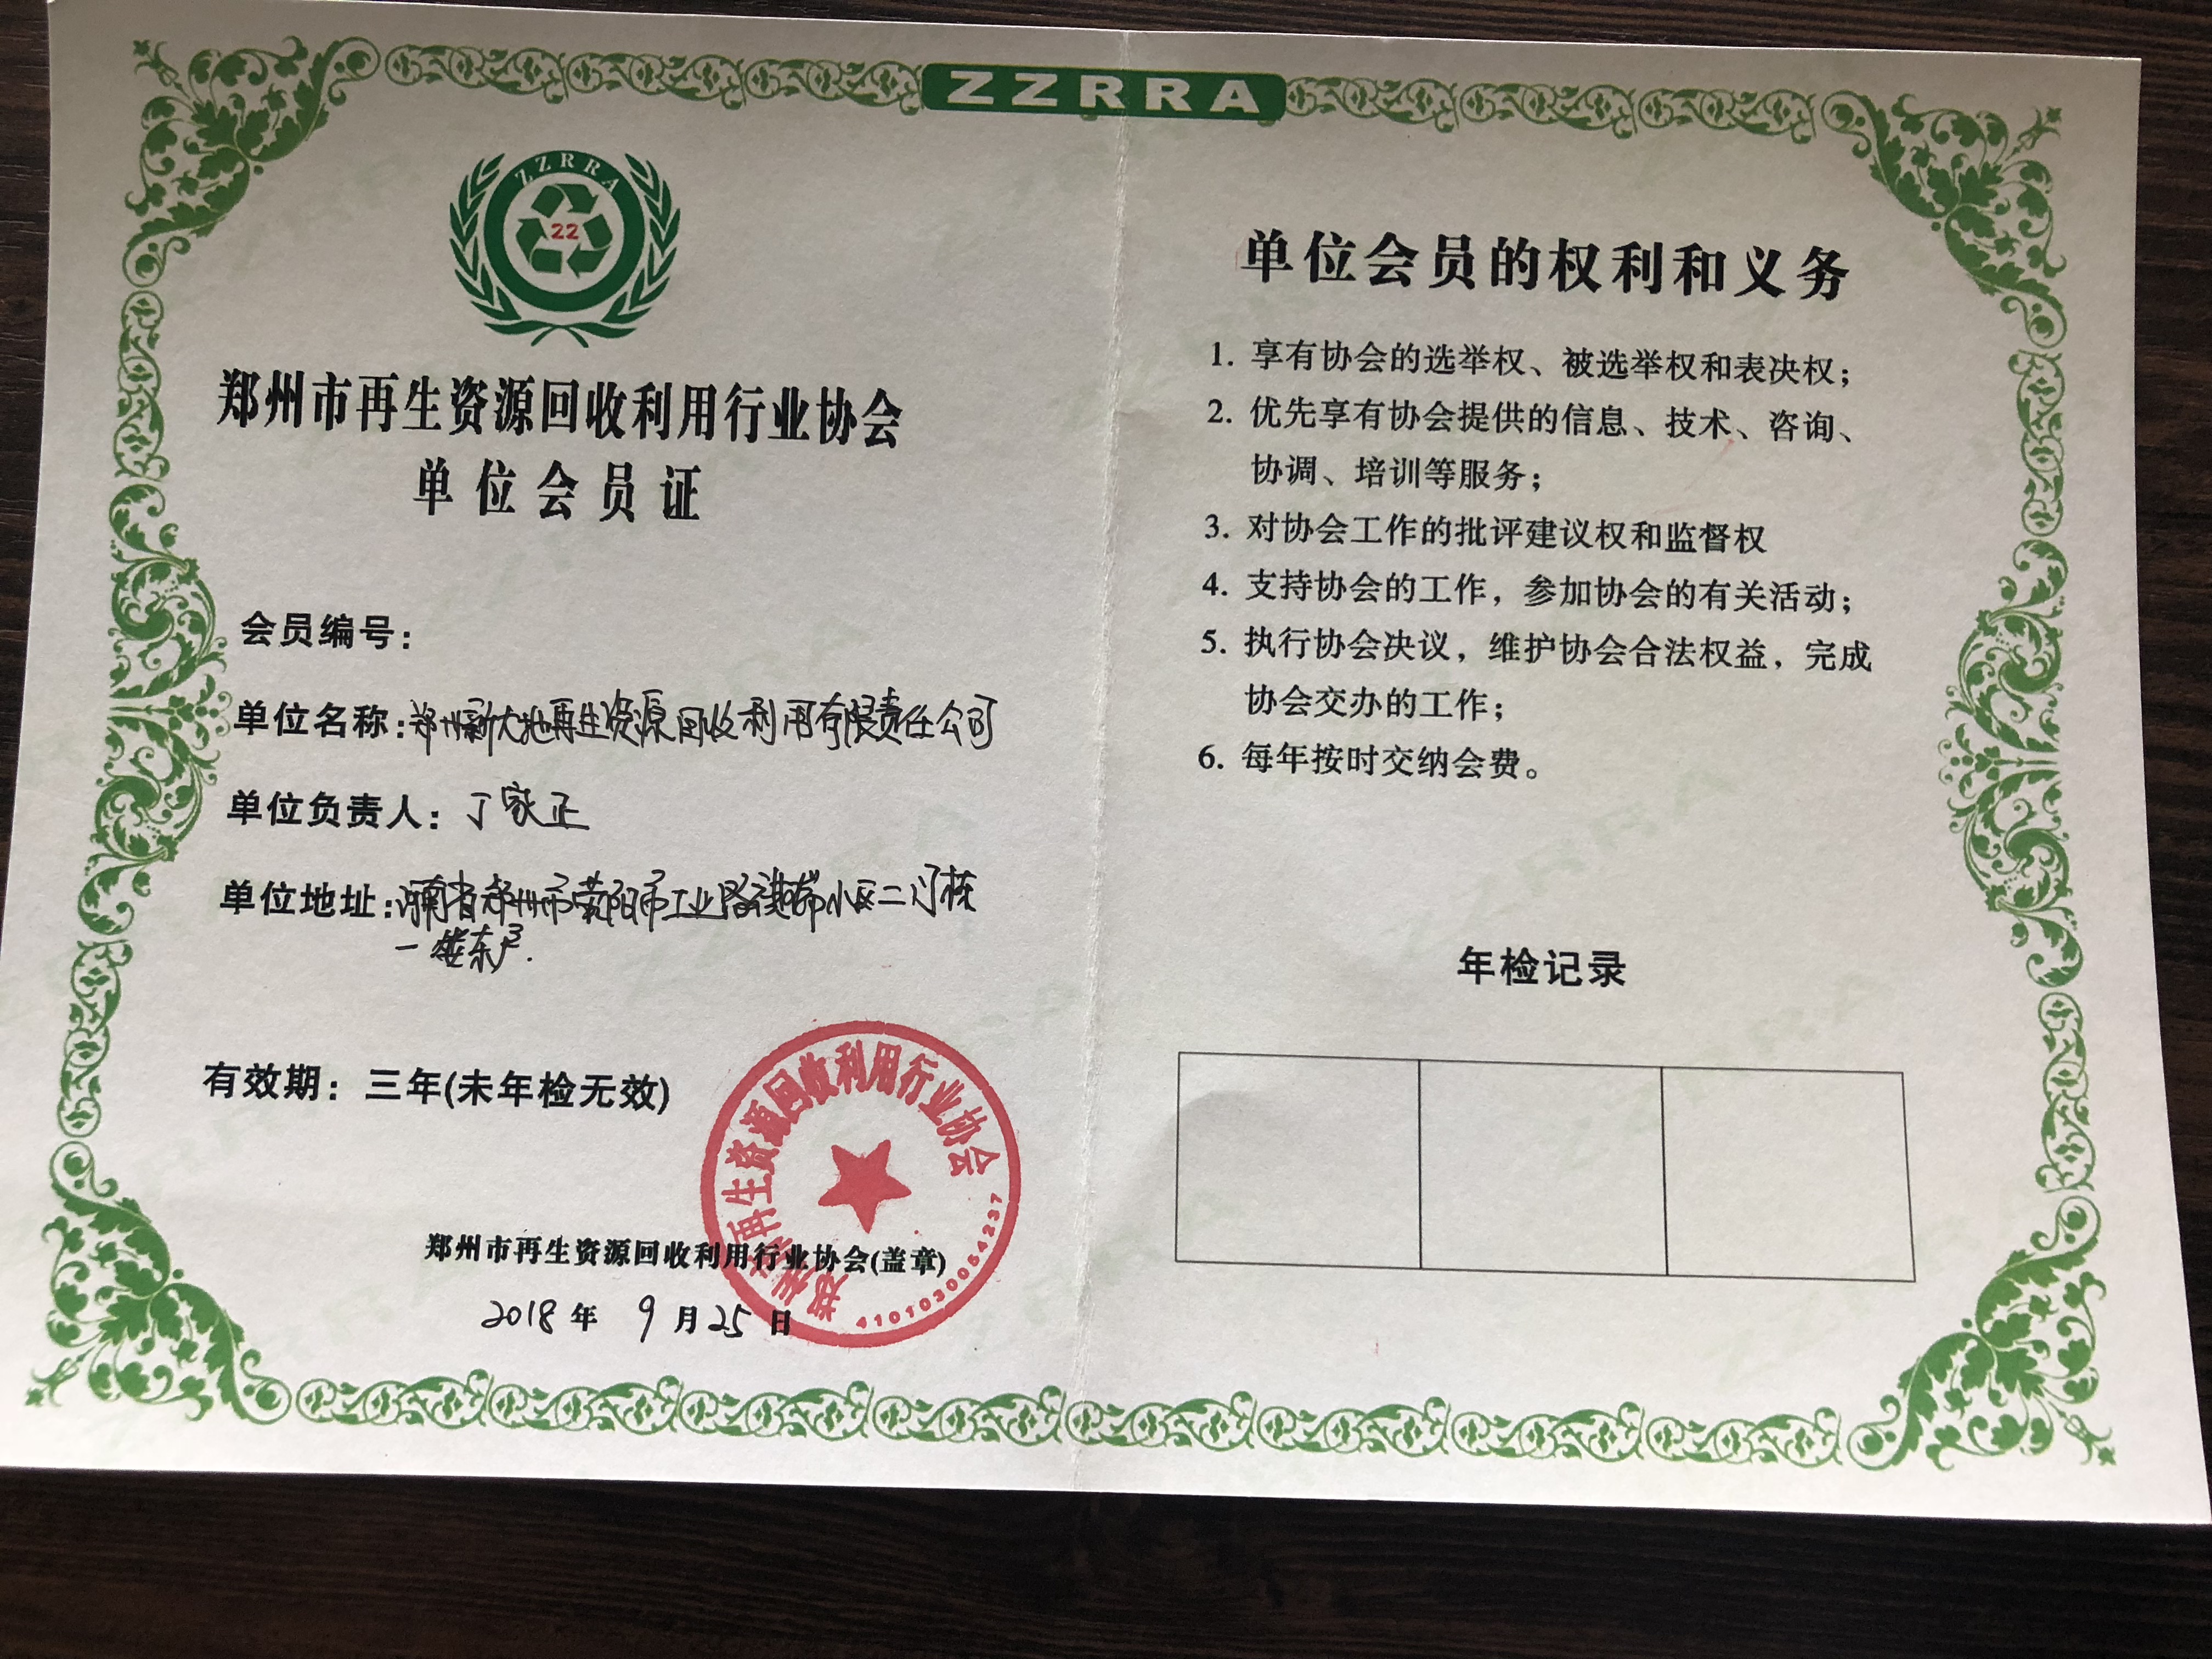 小喇叭回收正式成为郑州再生资源回收利用协会会员单位